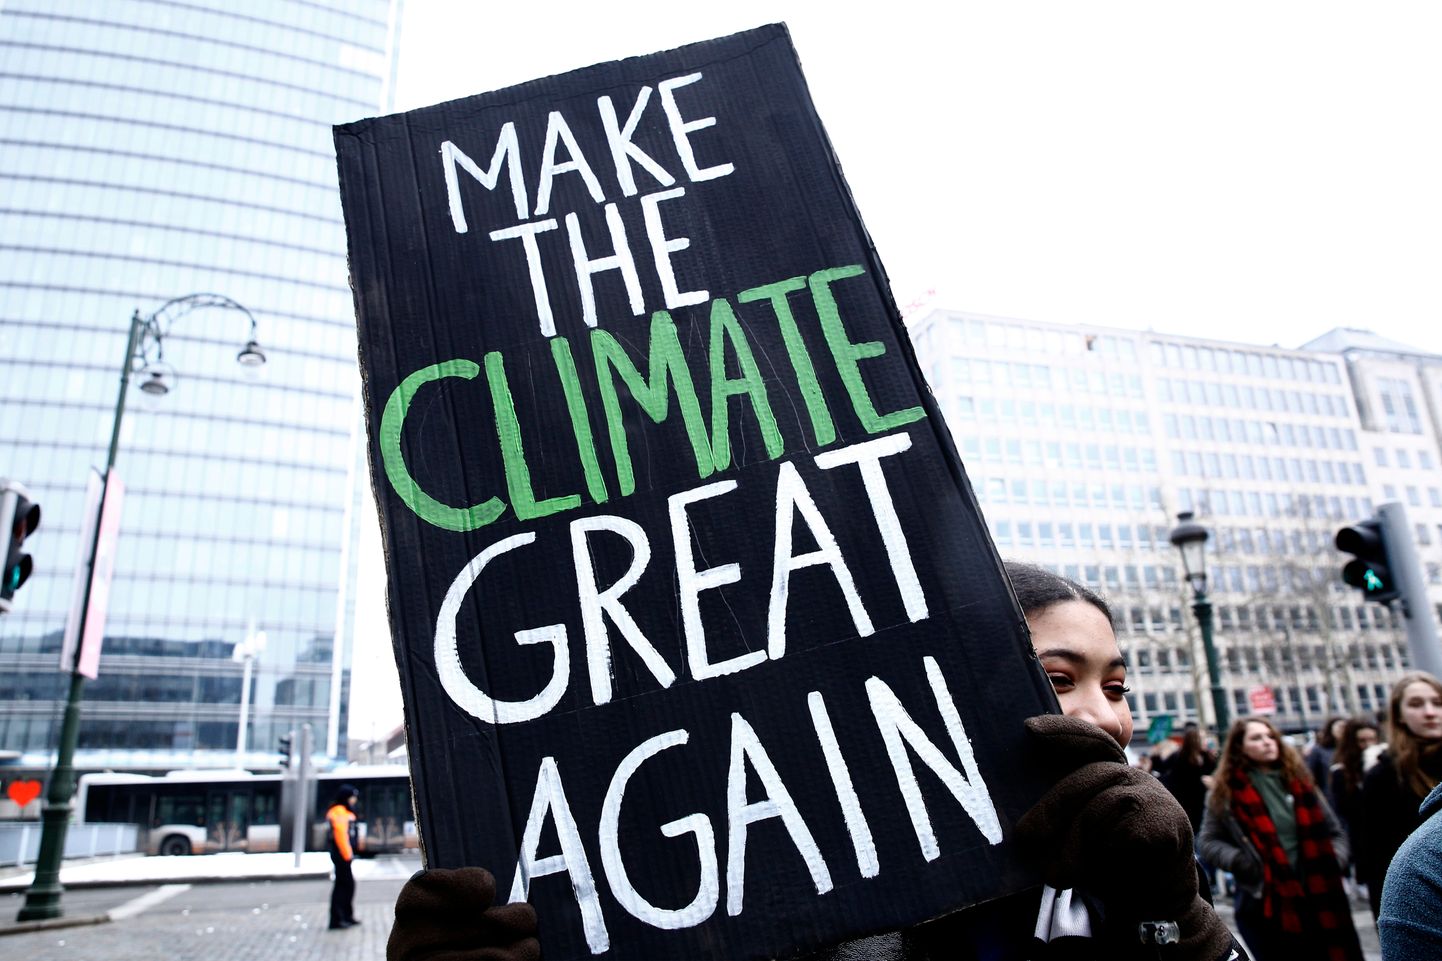 Brüssel, 24.jaanuar 2019. Meeleavaldus Belgias kliimamuutuste lahendamiseks